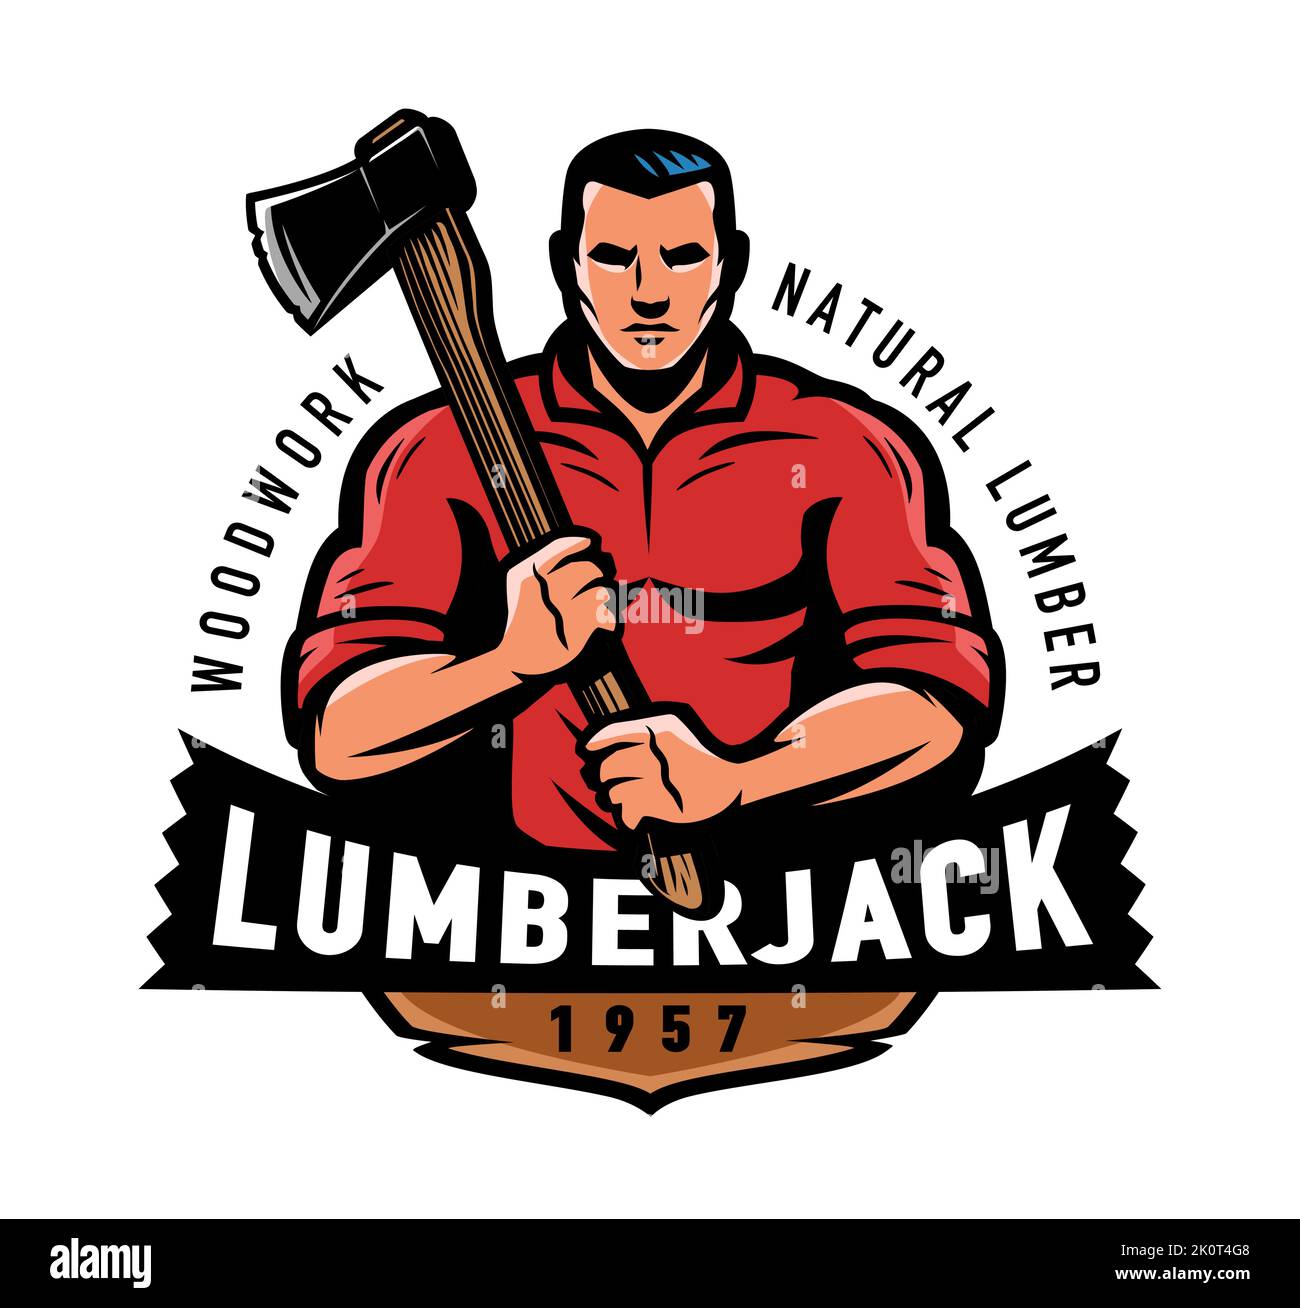 Lumberjack con emblema de hacha. Industria de la madera, logotipo y mascota maderera. Ilustración vectorial de la etiqueta de madera natural Ilustración del Vector